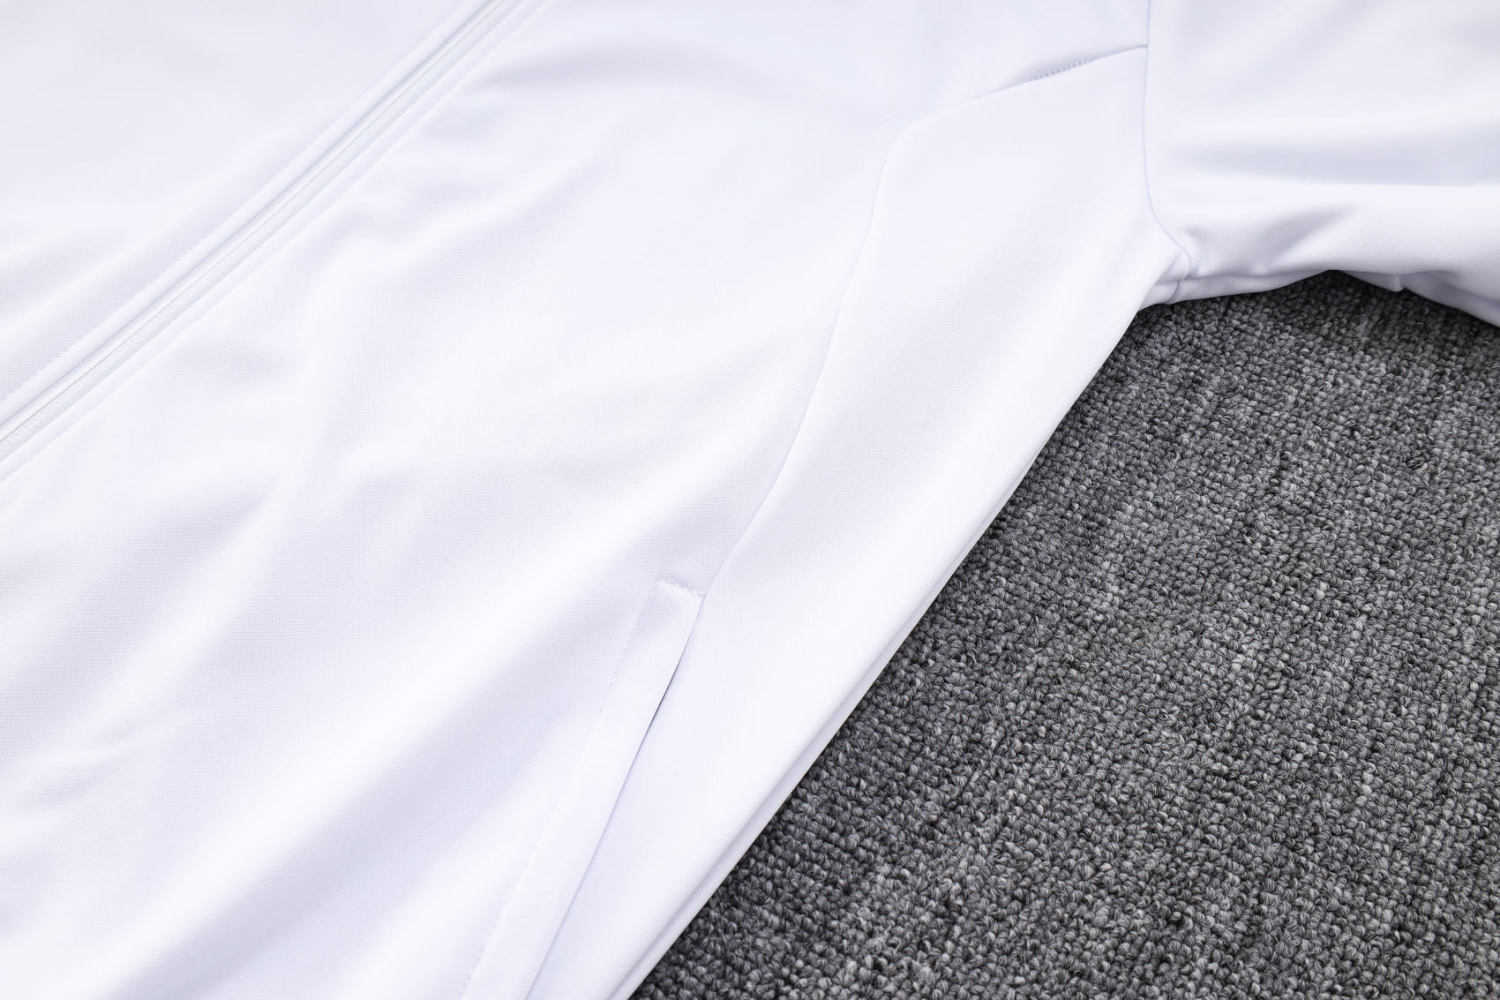 Real Madrid Soccer Jacket + Pants Replica White 2022/23 Mens (Hoodie)